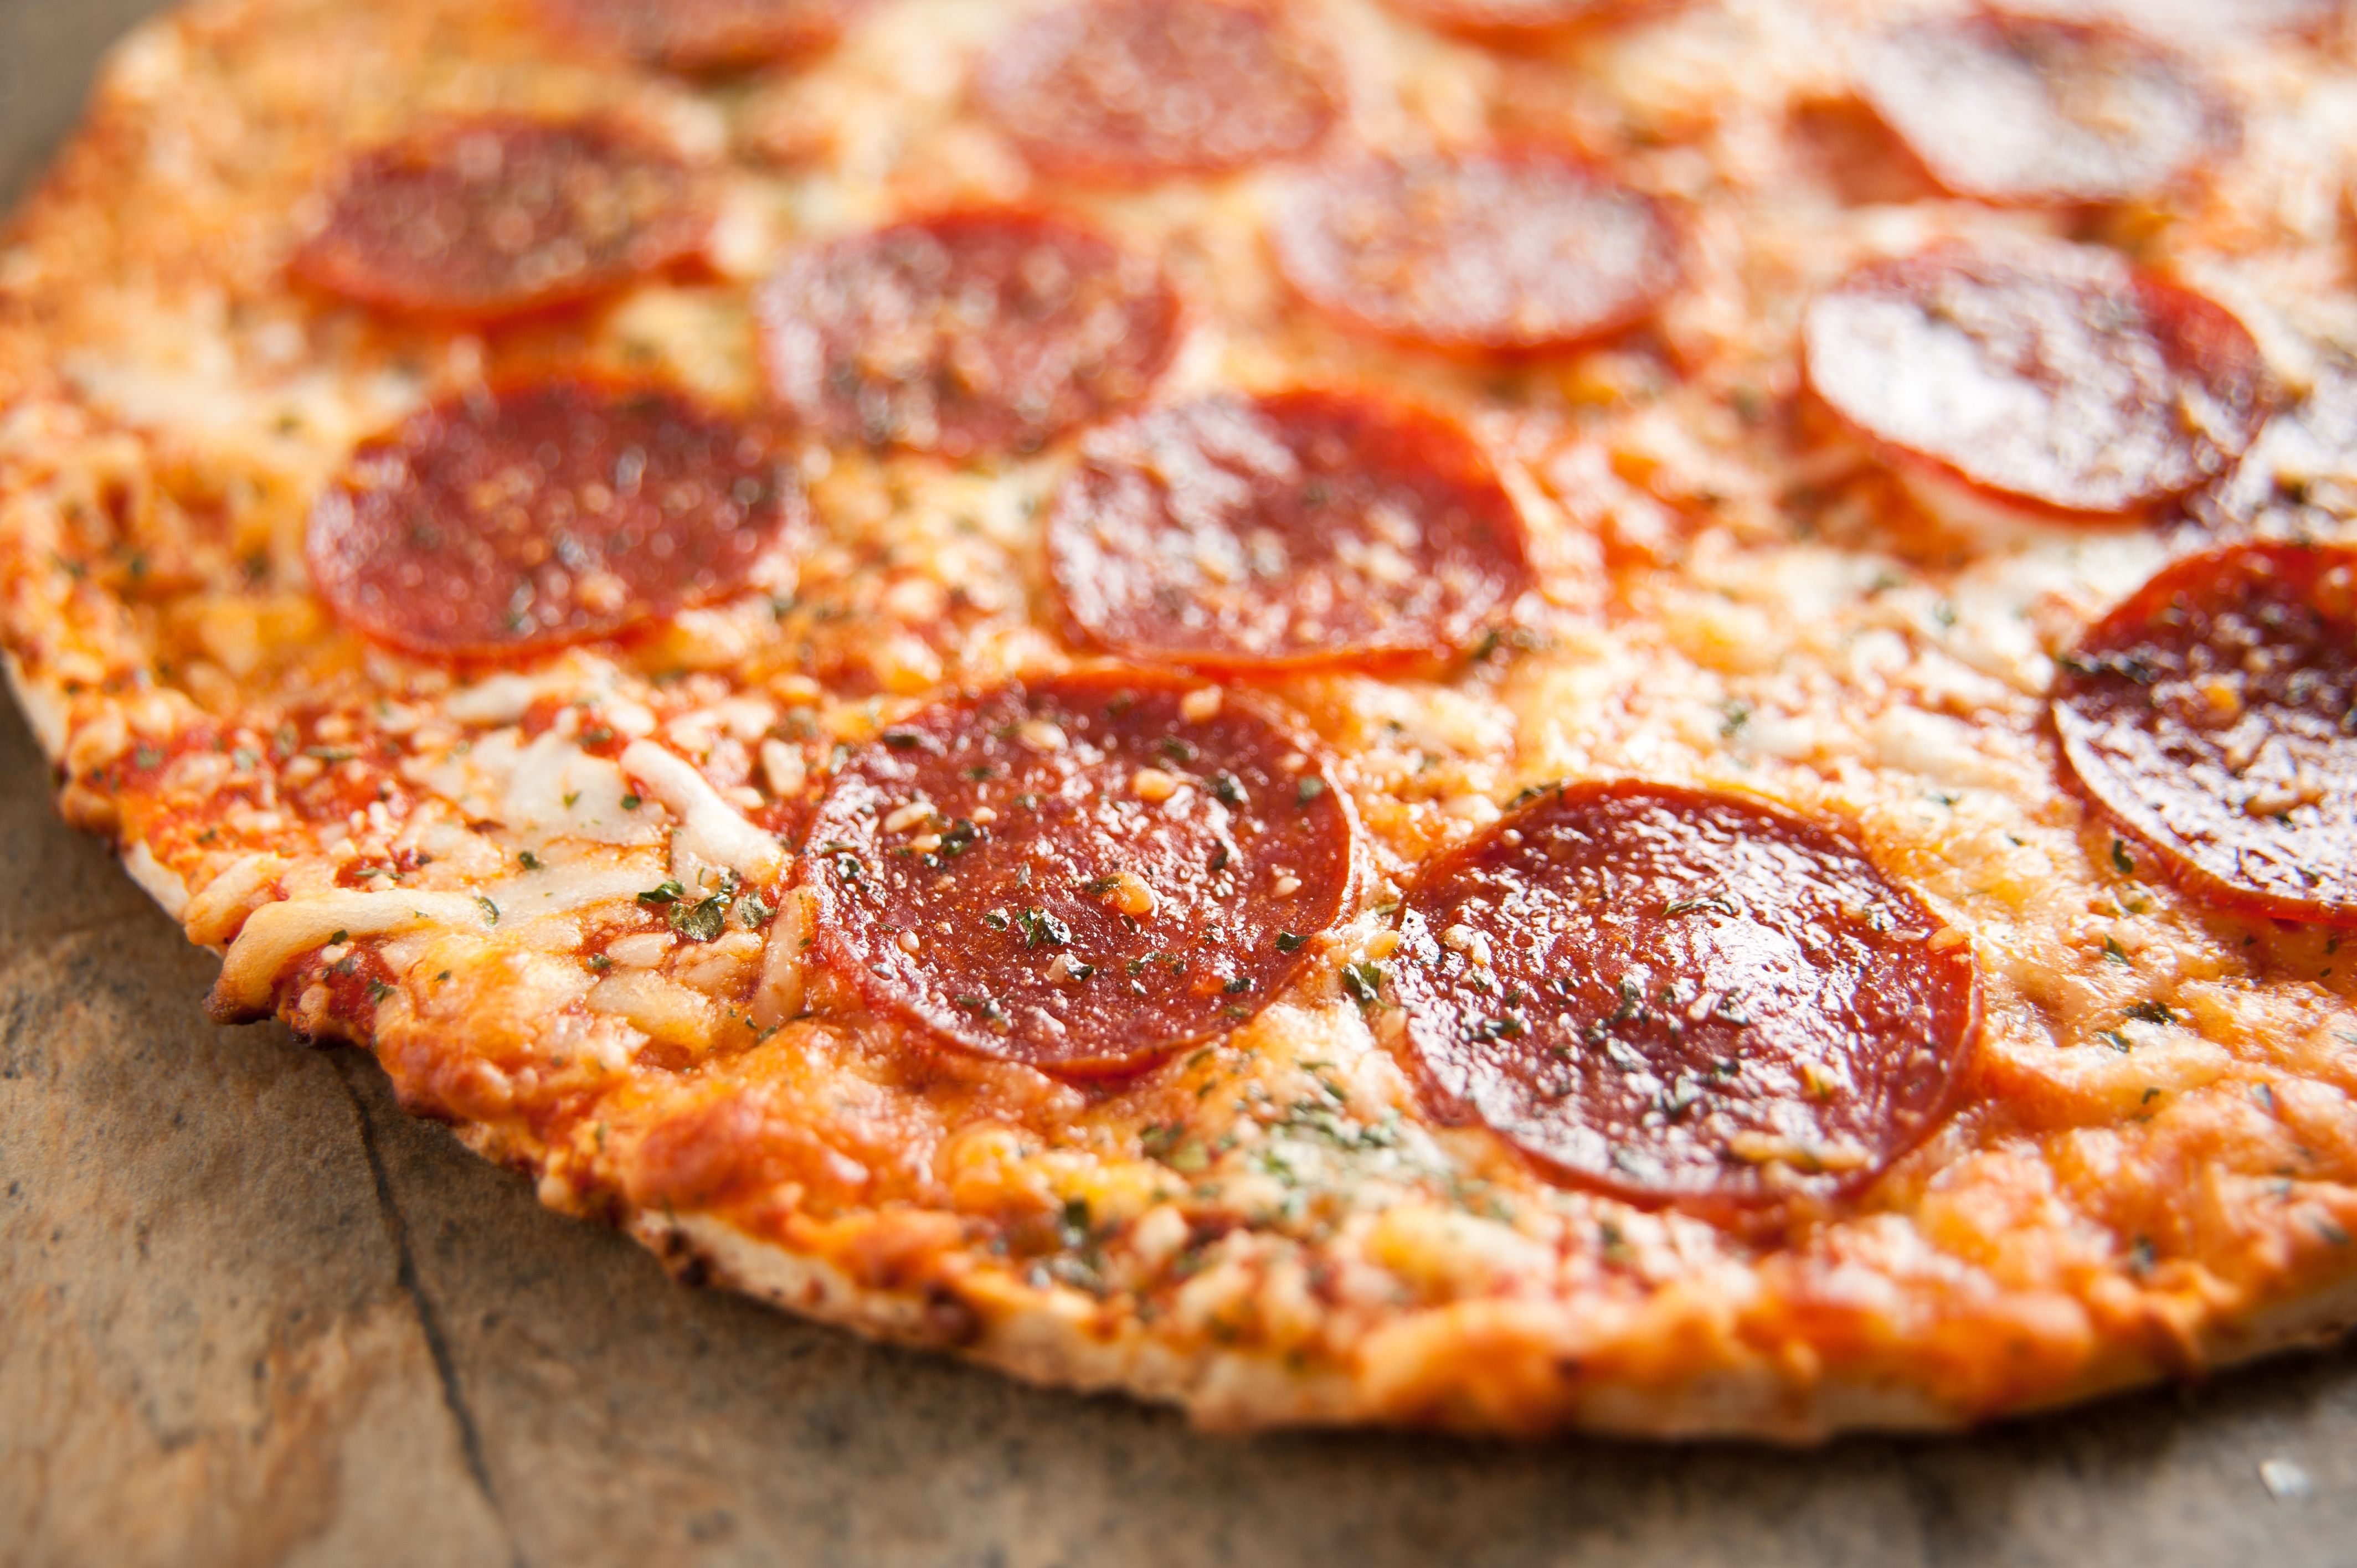 сколько калорий в куске пиццы пепперони из додо фото 41